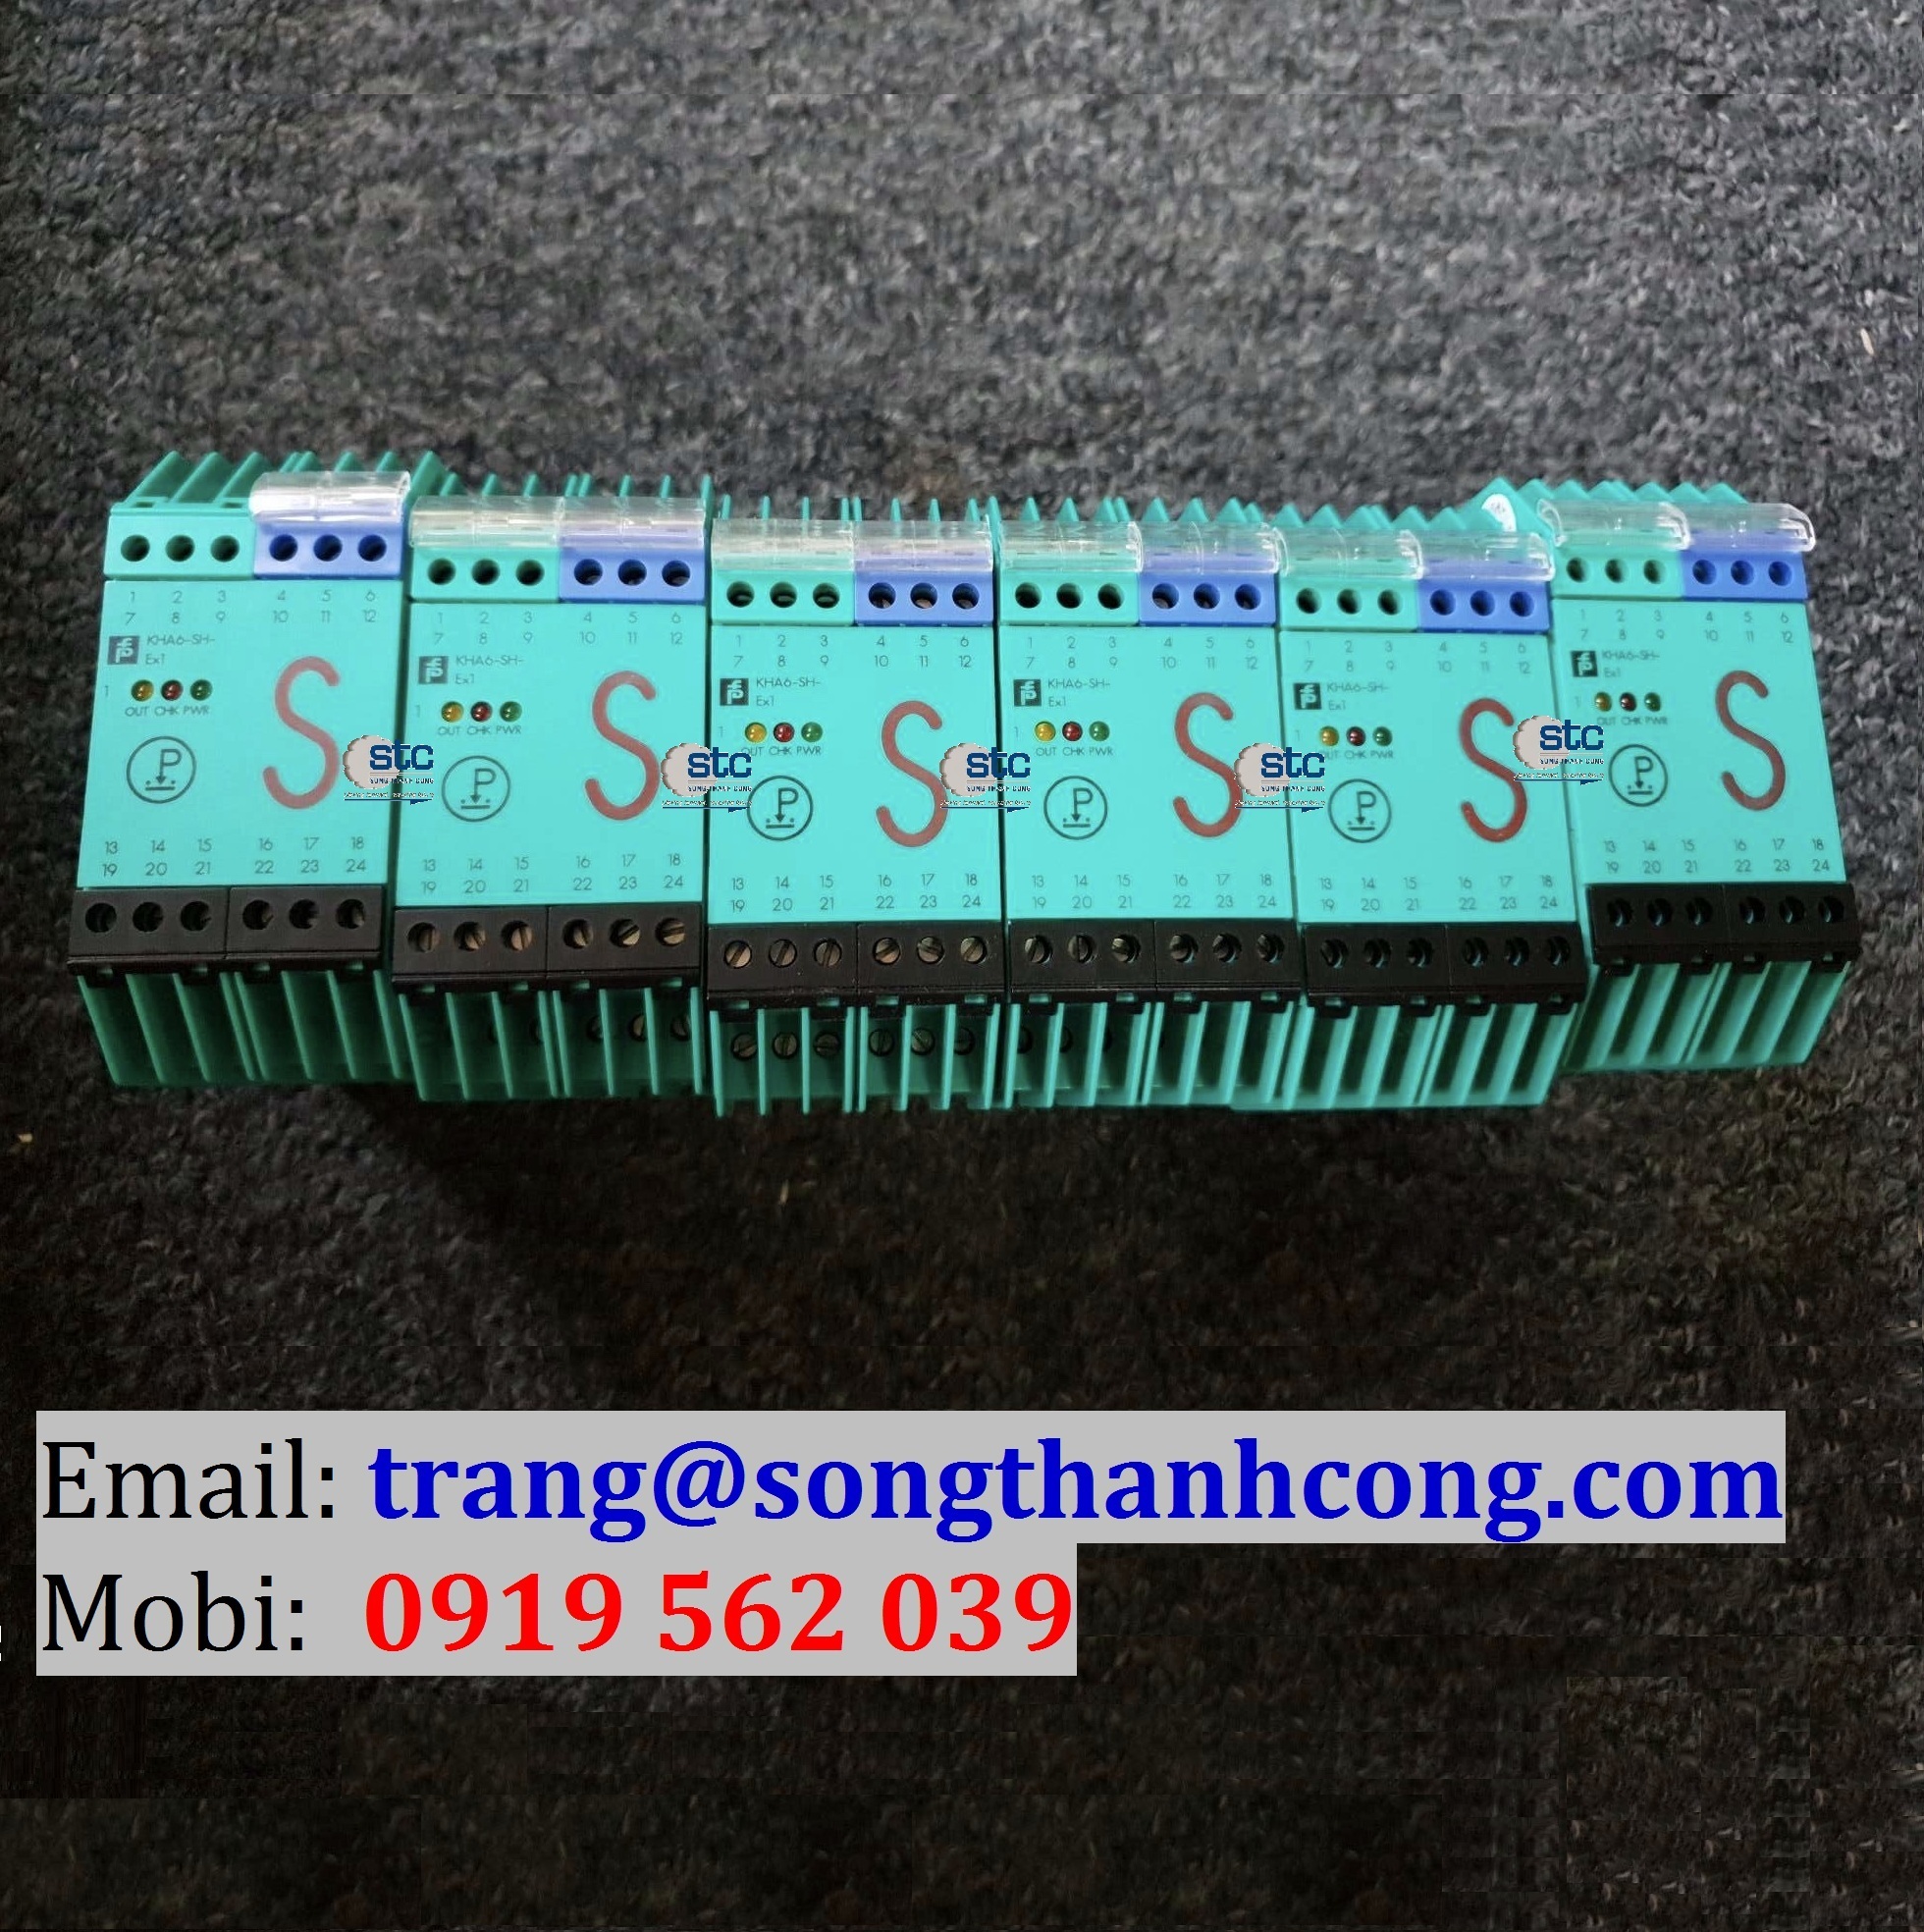 cong-tac-khuech-dai-tin-hieu-switch-amplifier-3.png